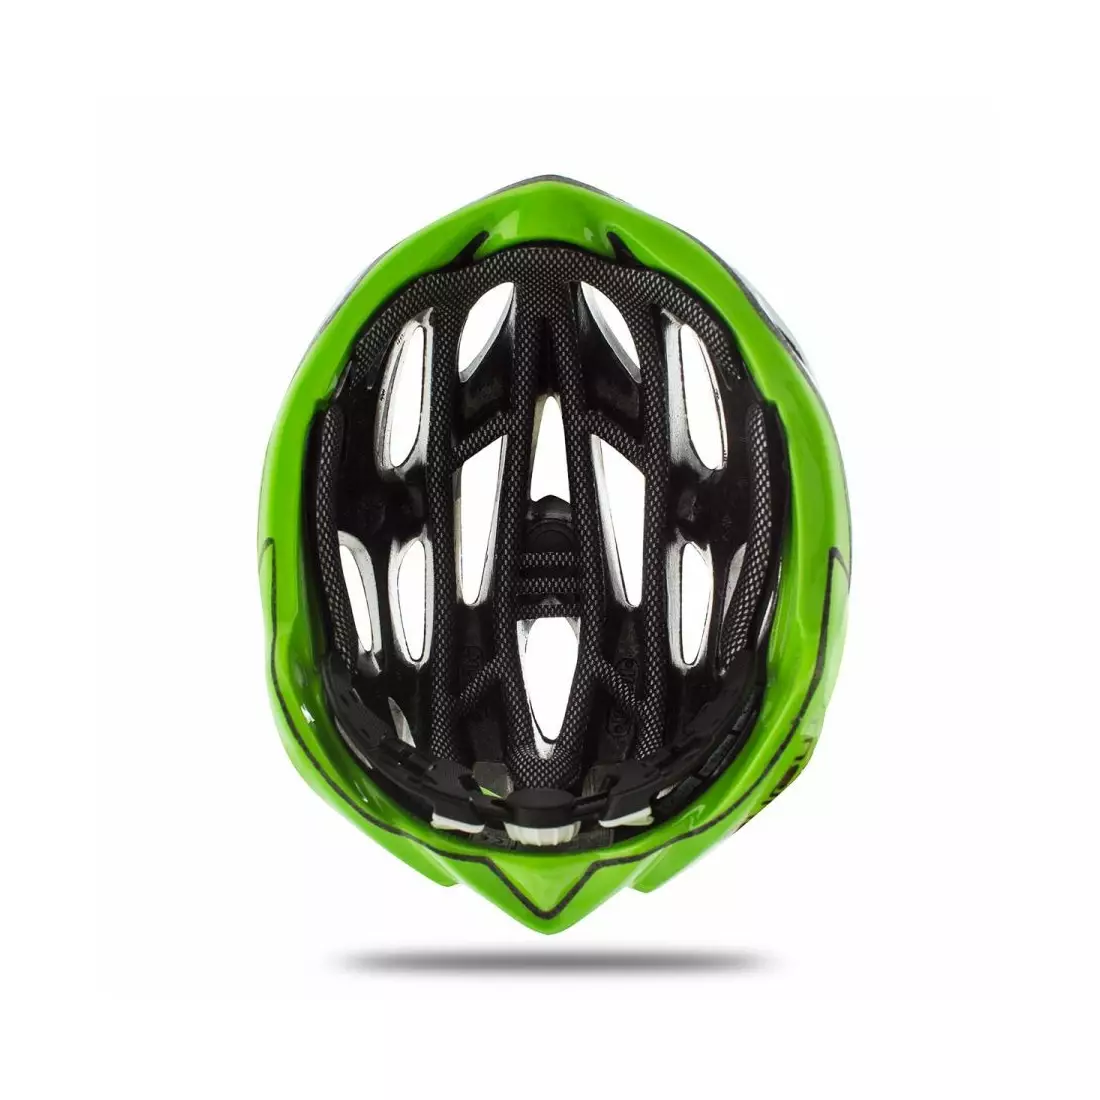 PRILBA MOJITO - cyklistická prilba CHE00026.208 farba: bielo-zelená